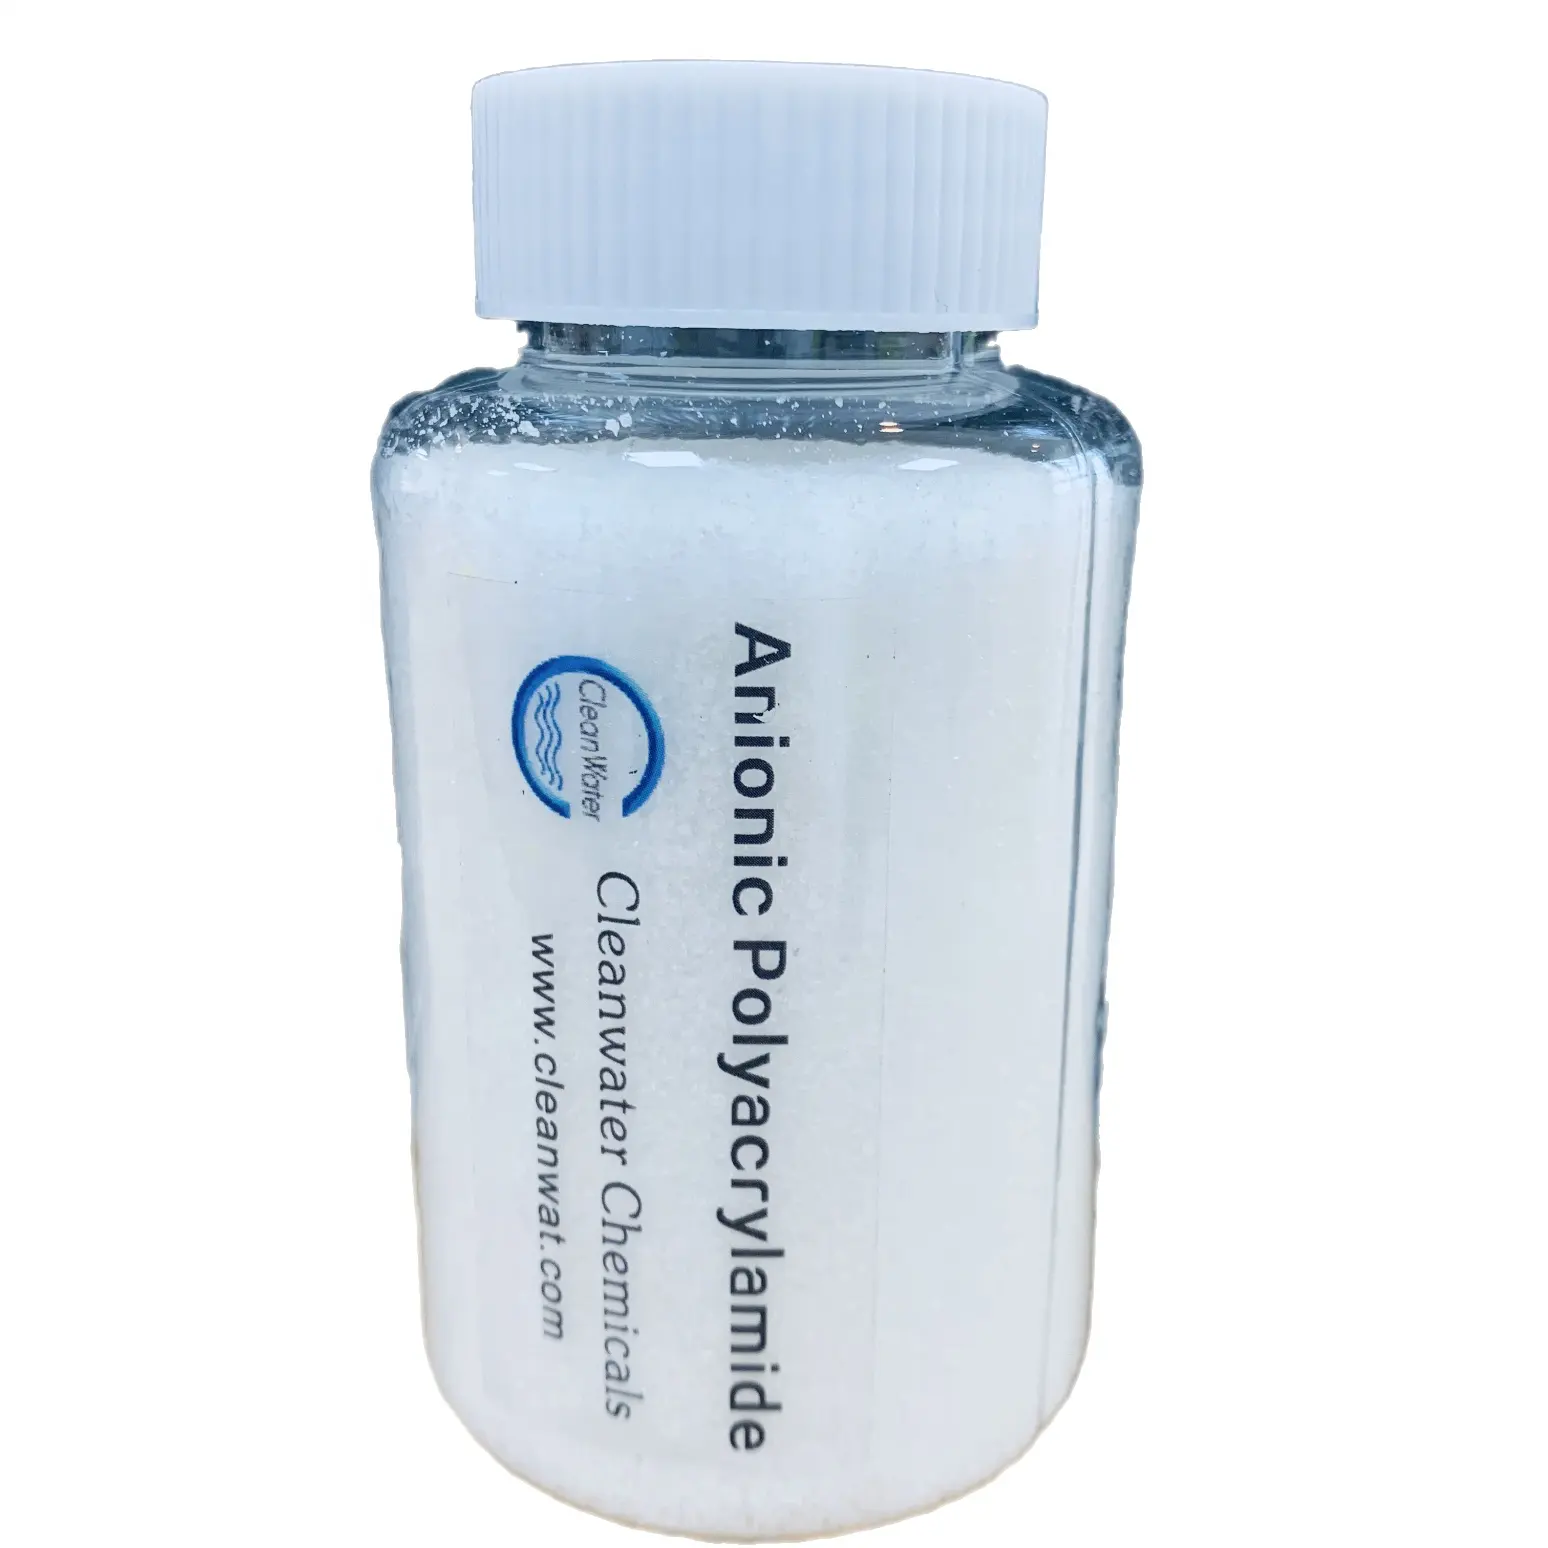 ราคาที่ดีที่สุดผงสีขาวทนต่ออุณหภูมิสูงจีนสารเคมีบำบัดน้ำ Anionic Polyacrylamide MSDS